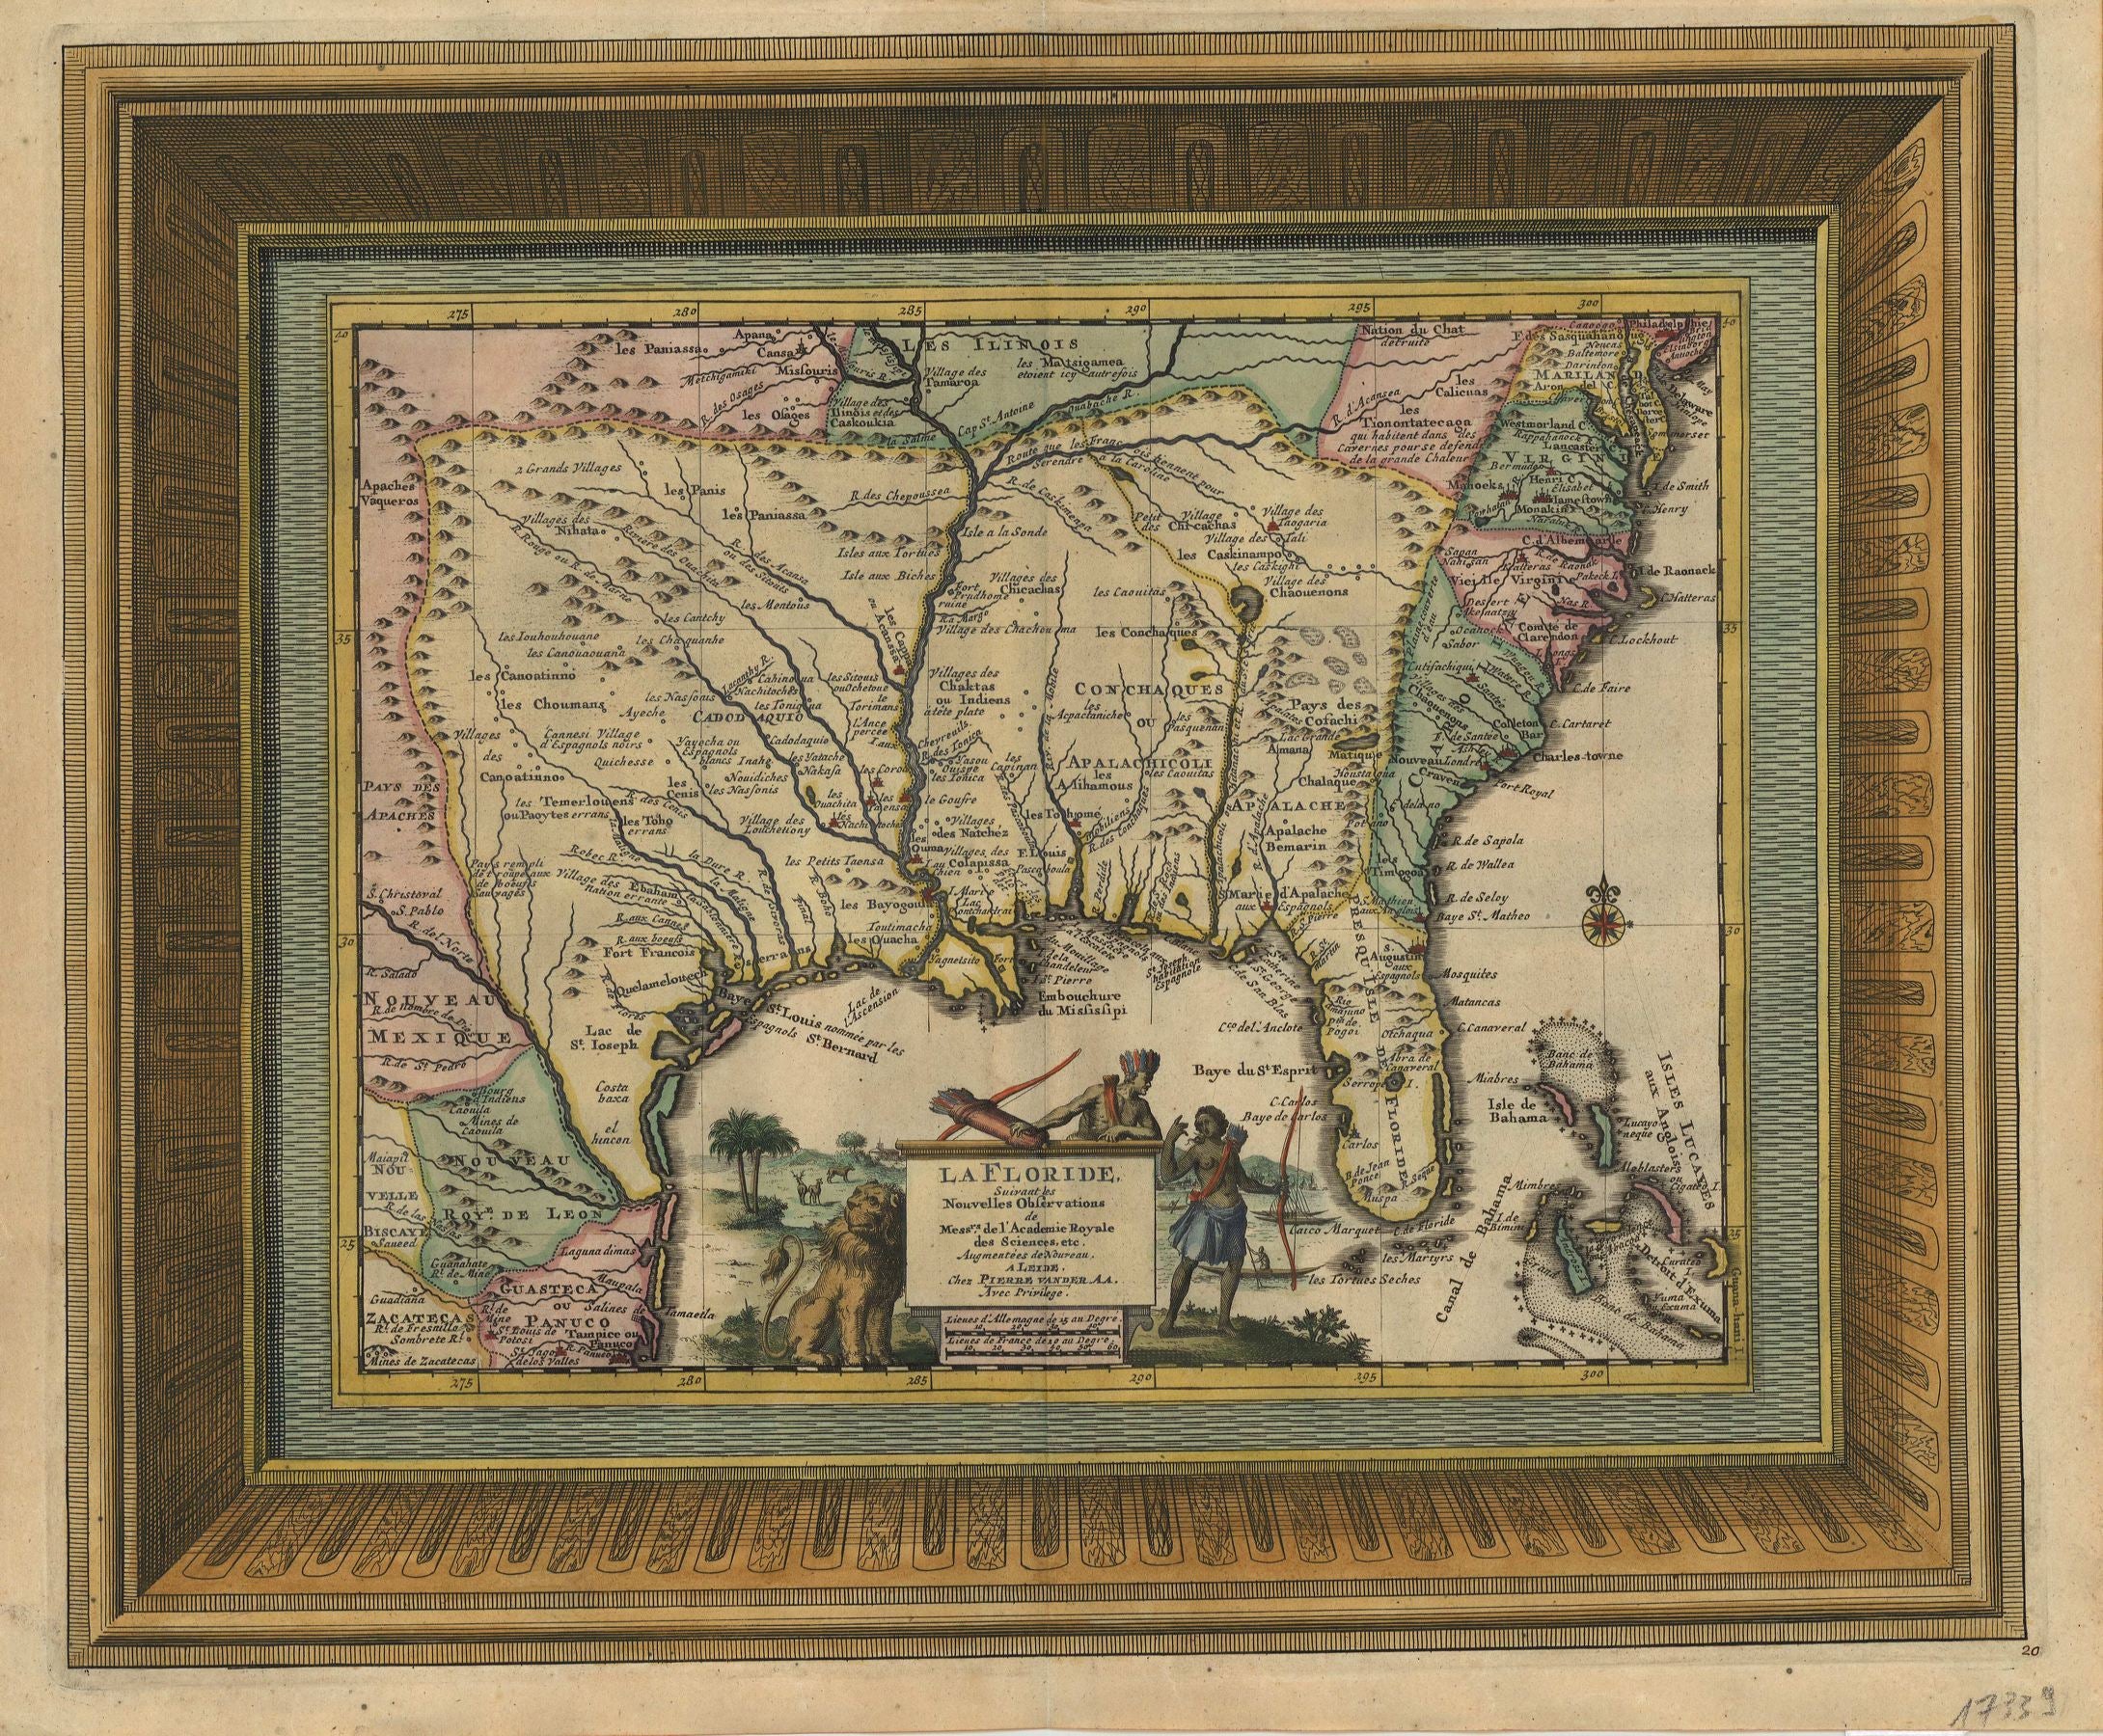 Vereinigte Staaten von Amerika - Florida im Jahr 1729 von Pieter van der Aa